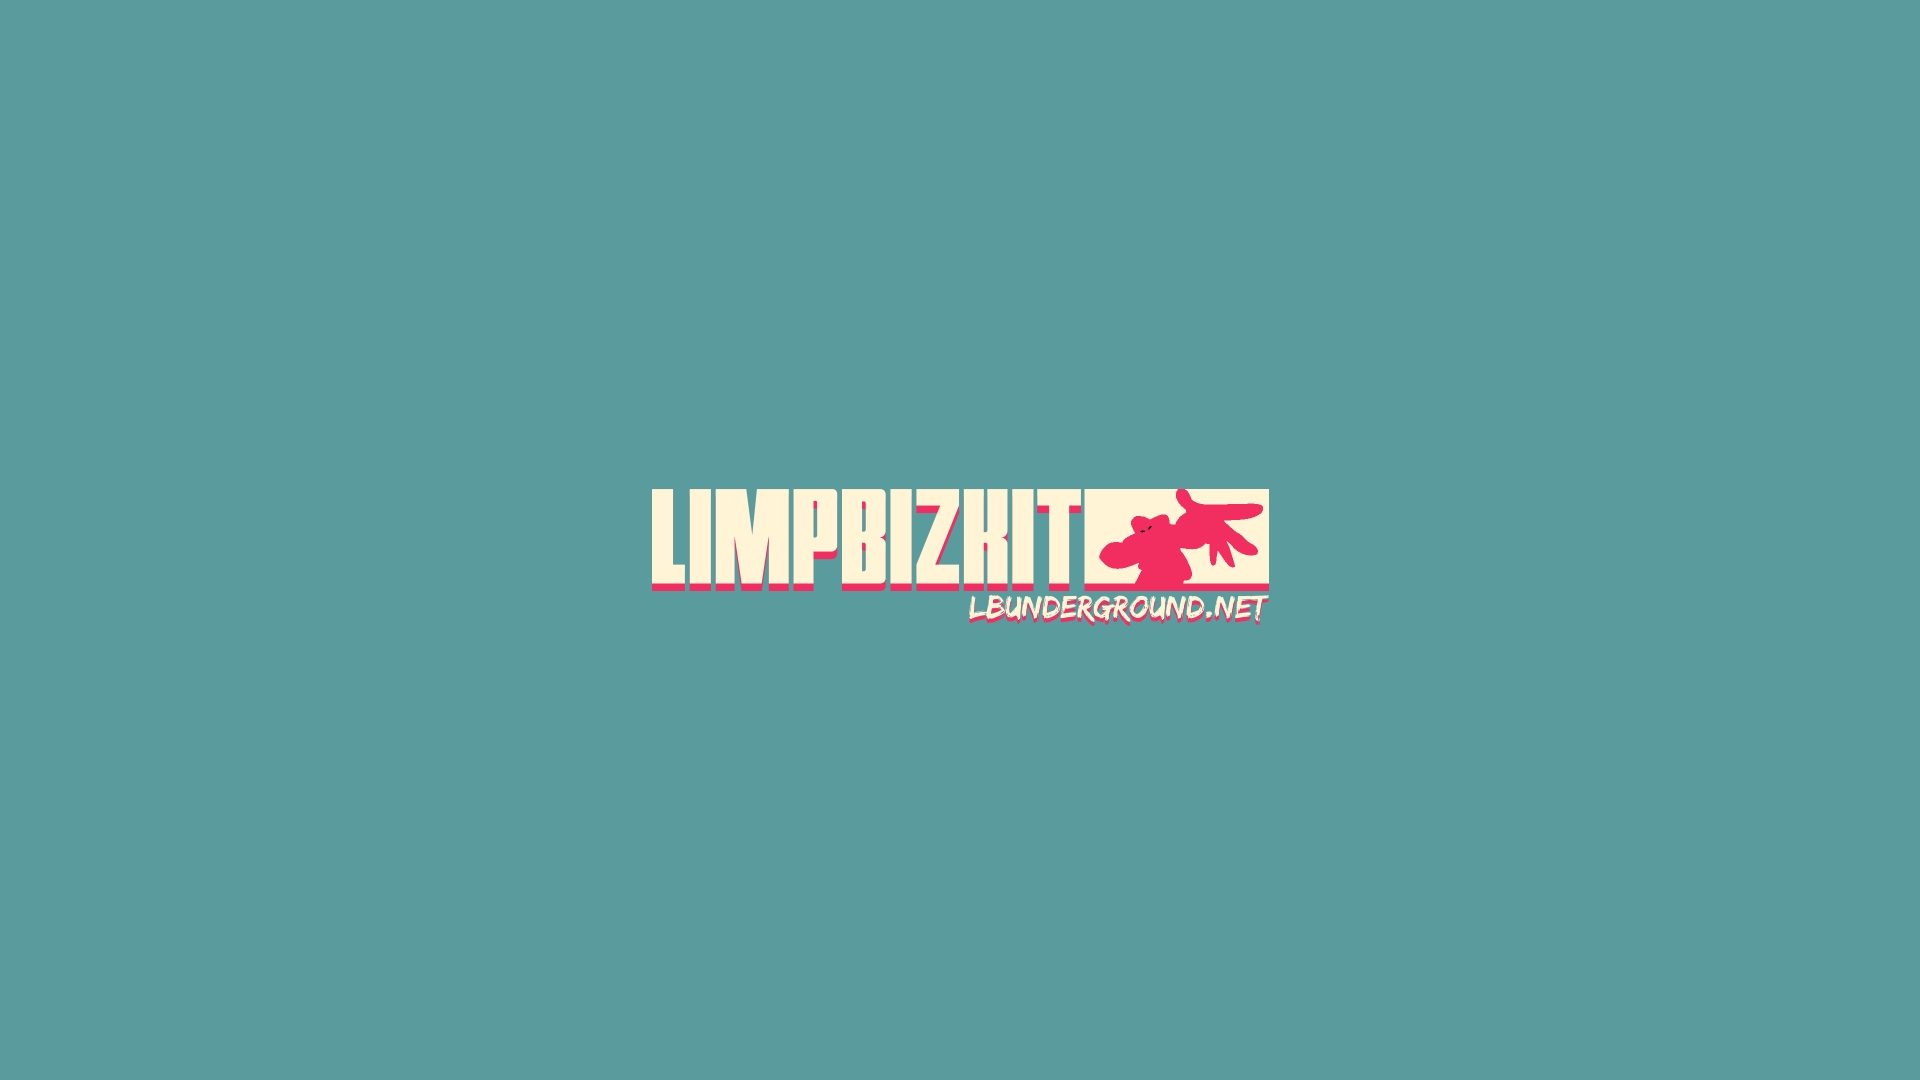 Limp Bizkit Lbunderground Wallpaper HD By Soenkesadventure On